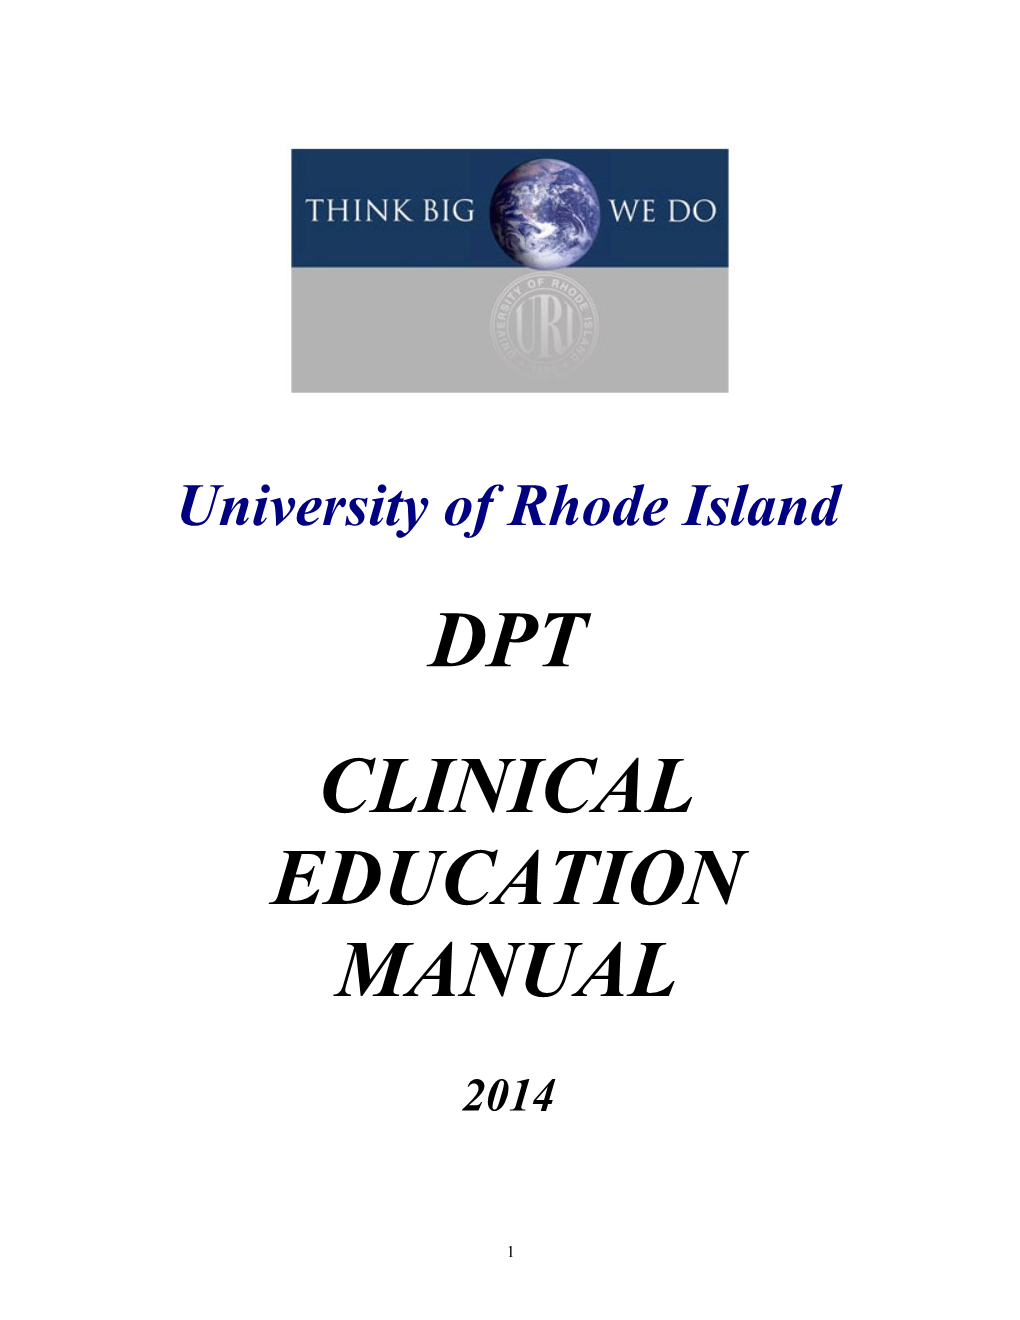 URI Clinical Education Manual